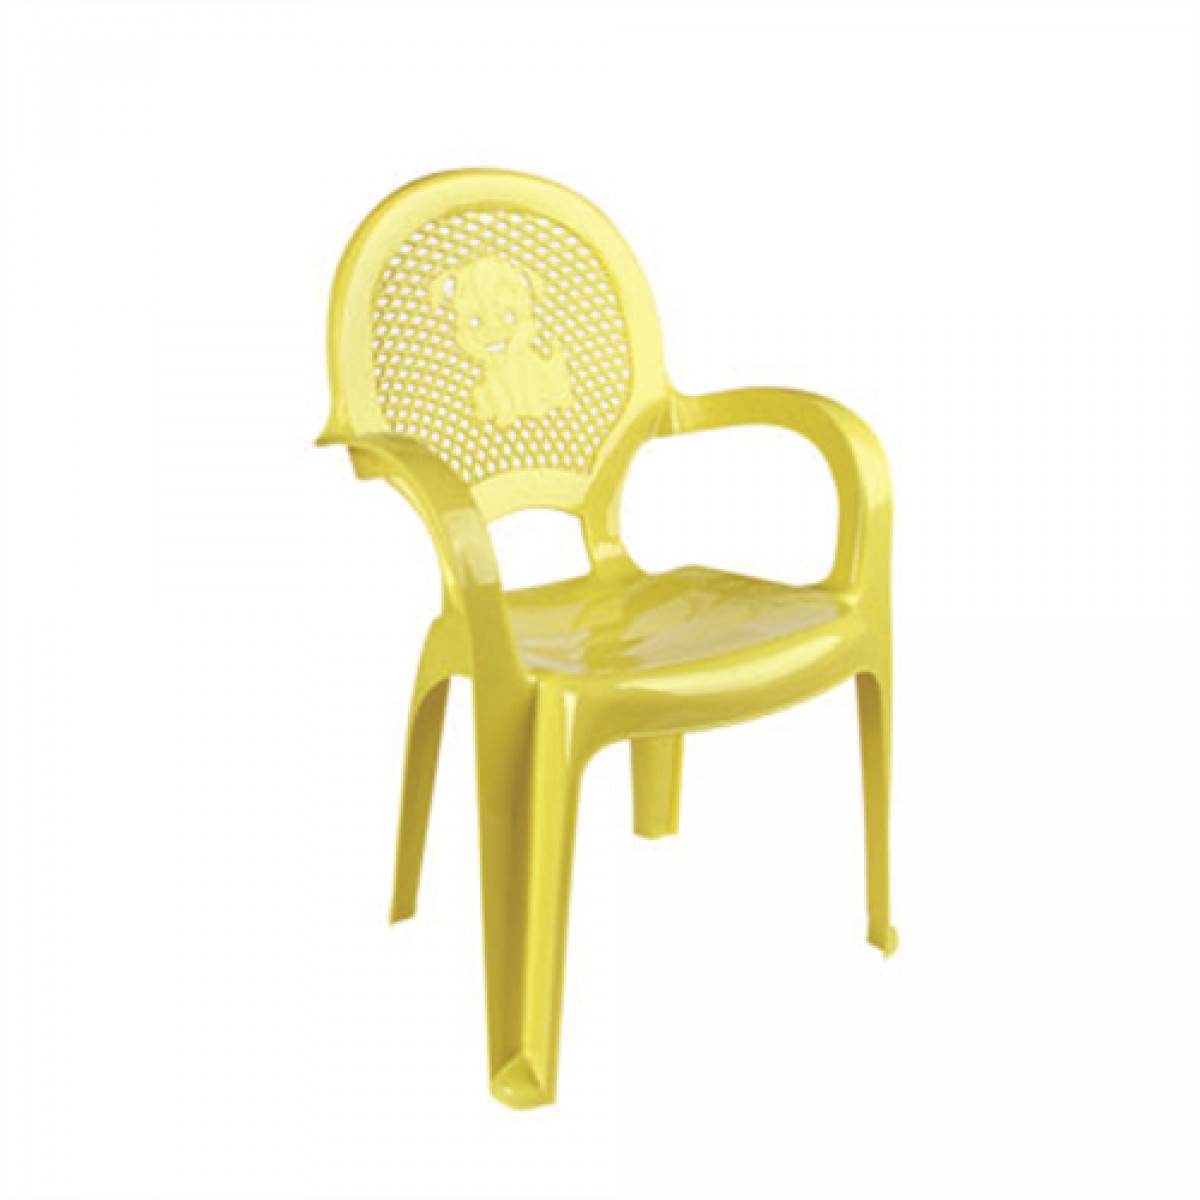 стул ребенка бледно желтый стул